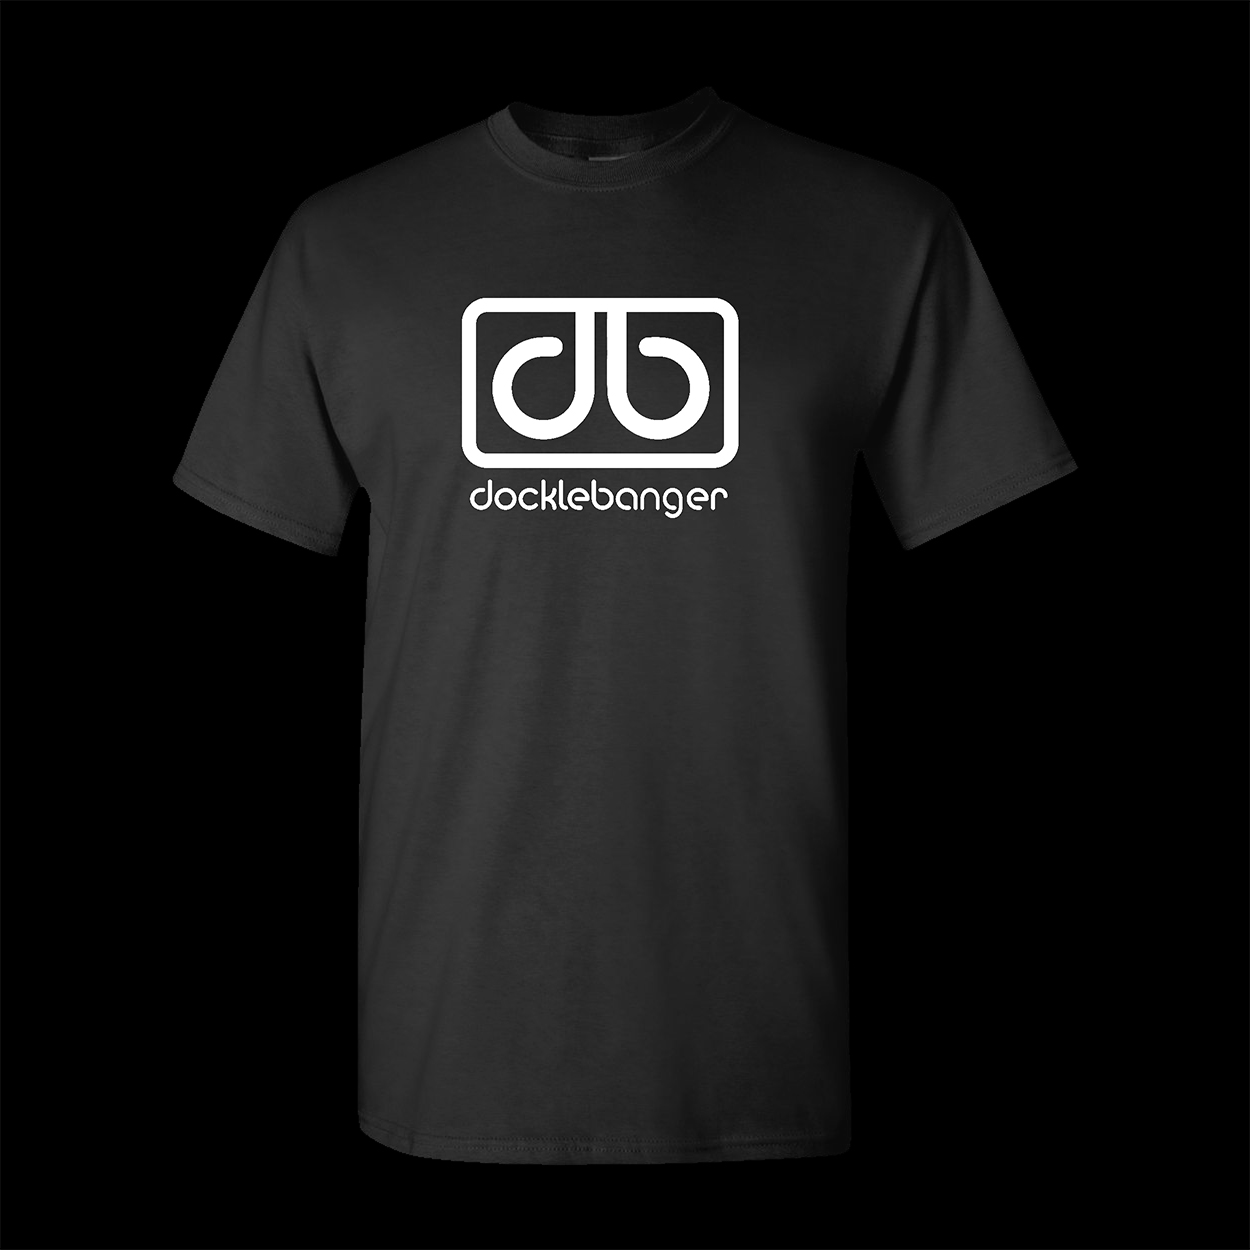 Docklebanger black t-shirt